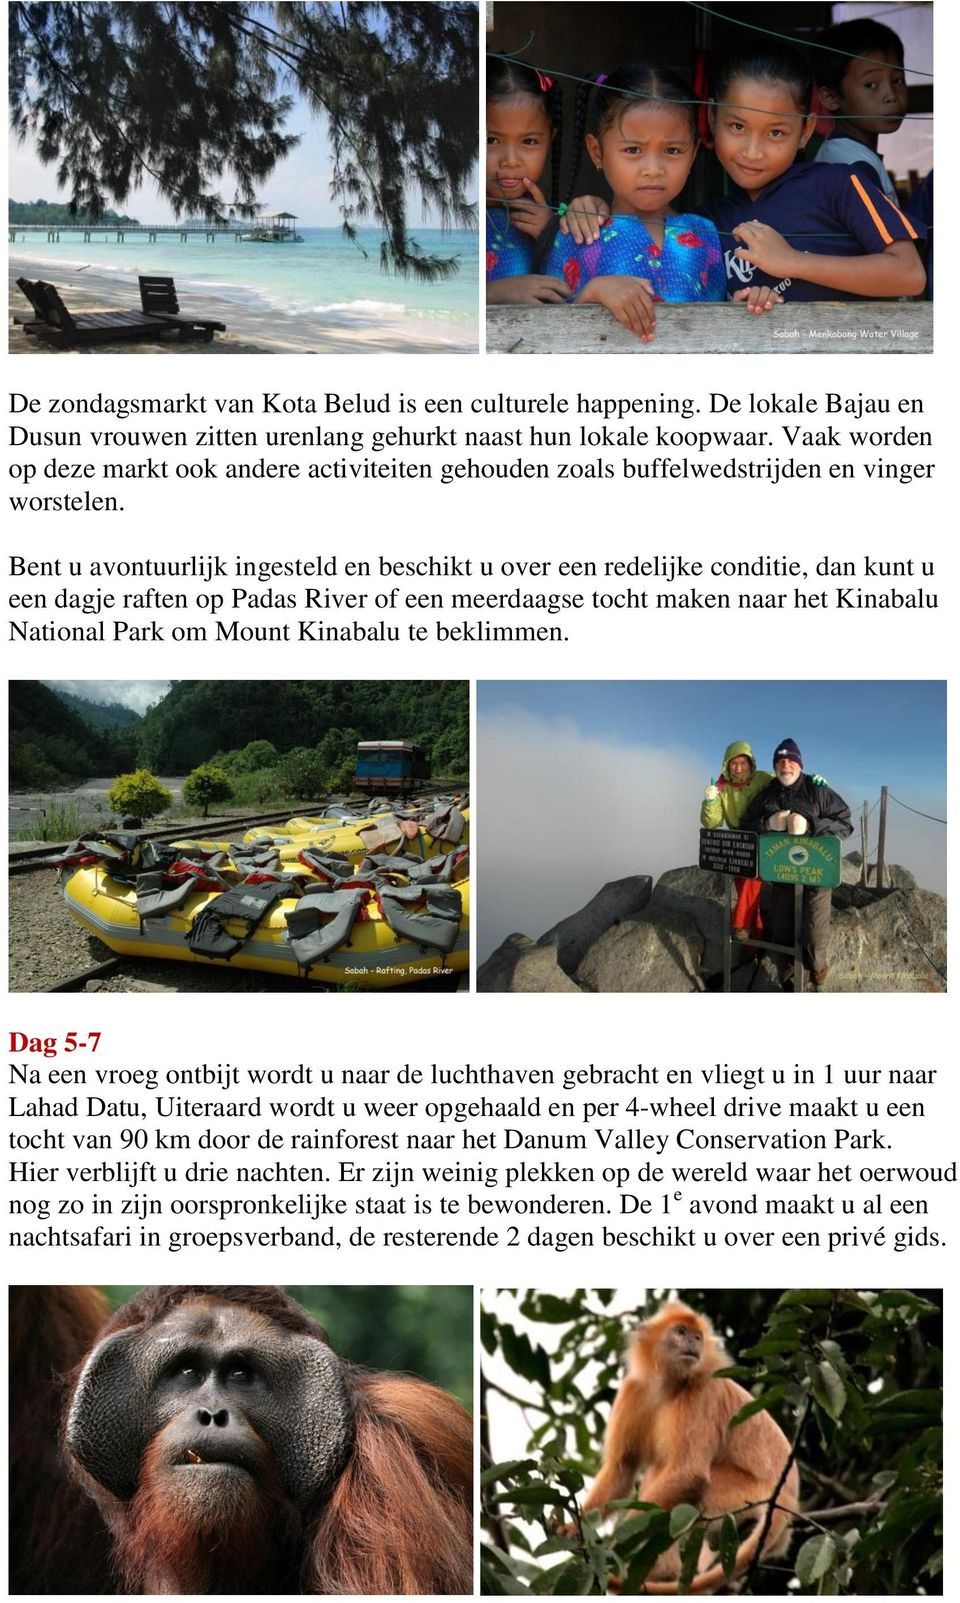 Bent u avontuurlijk ingesteld en beschikt u over een redelijke conditie, dan kunt u een dagje raften op Padas River of een meerdaagse tocht maken naar het Kinabalu National Park om Mount Kinabalu te